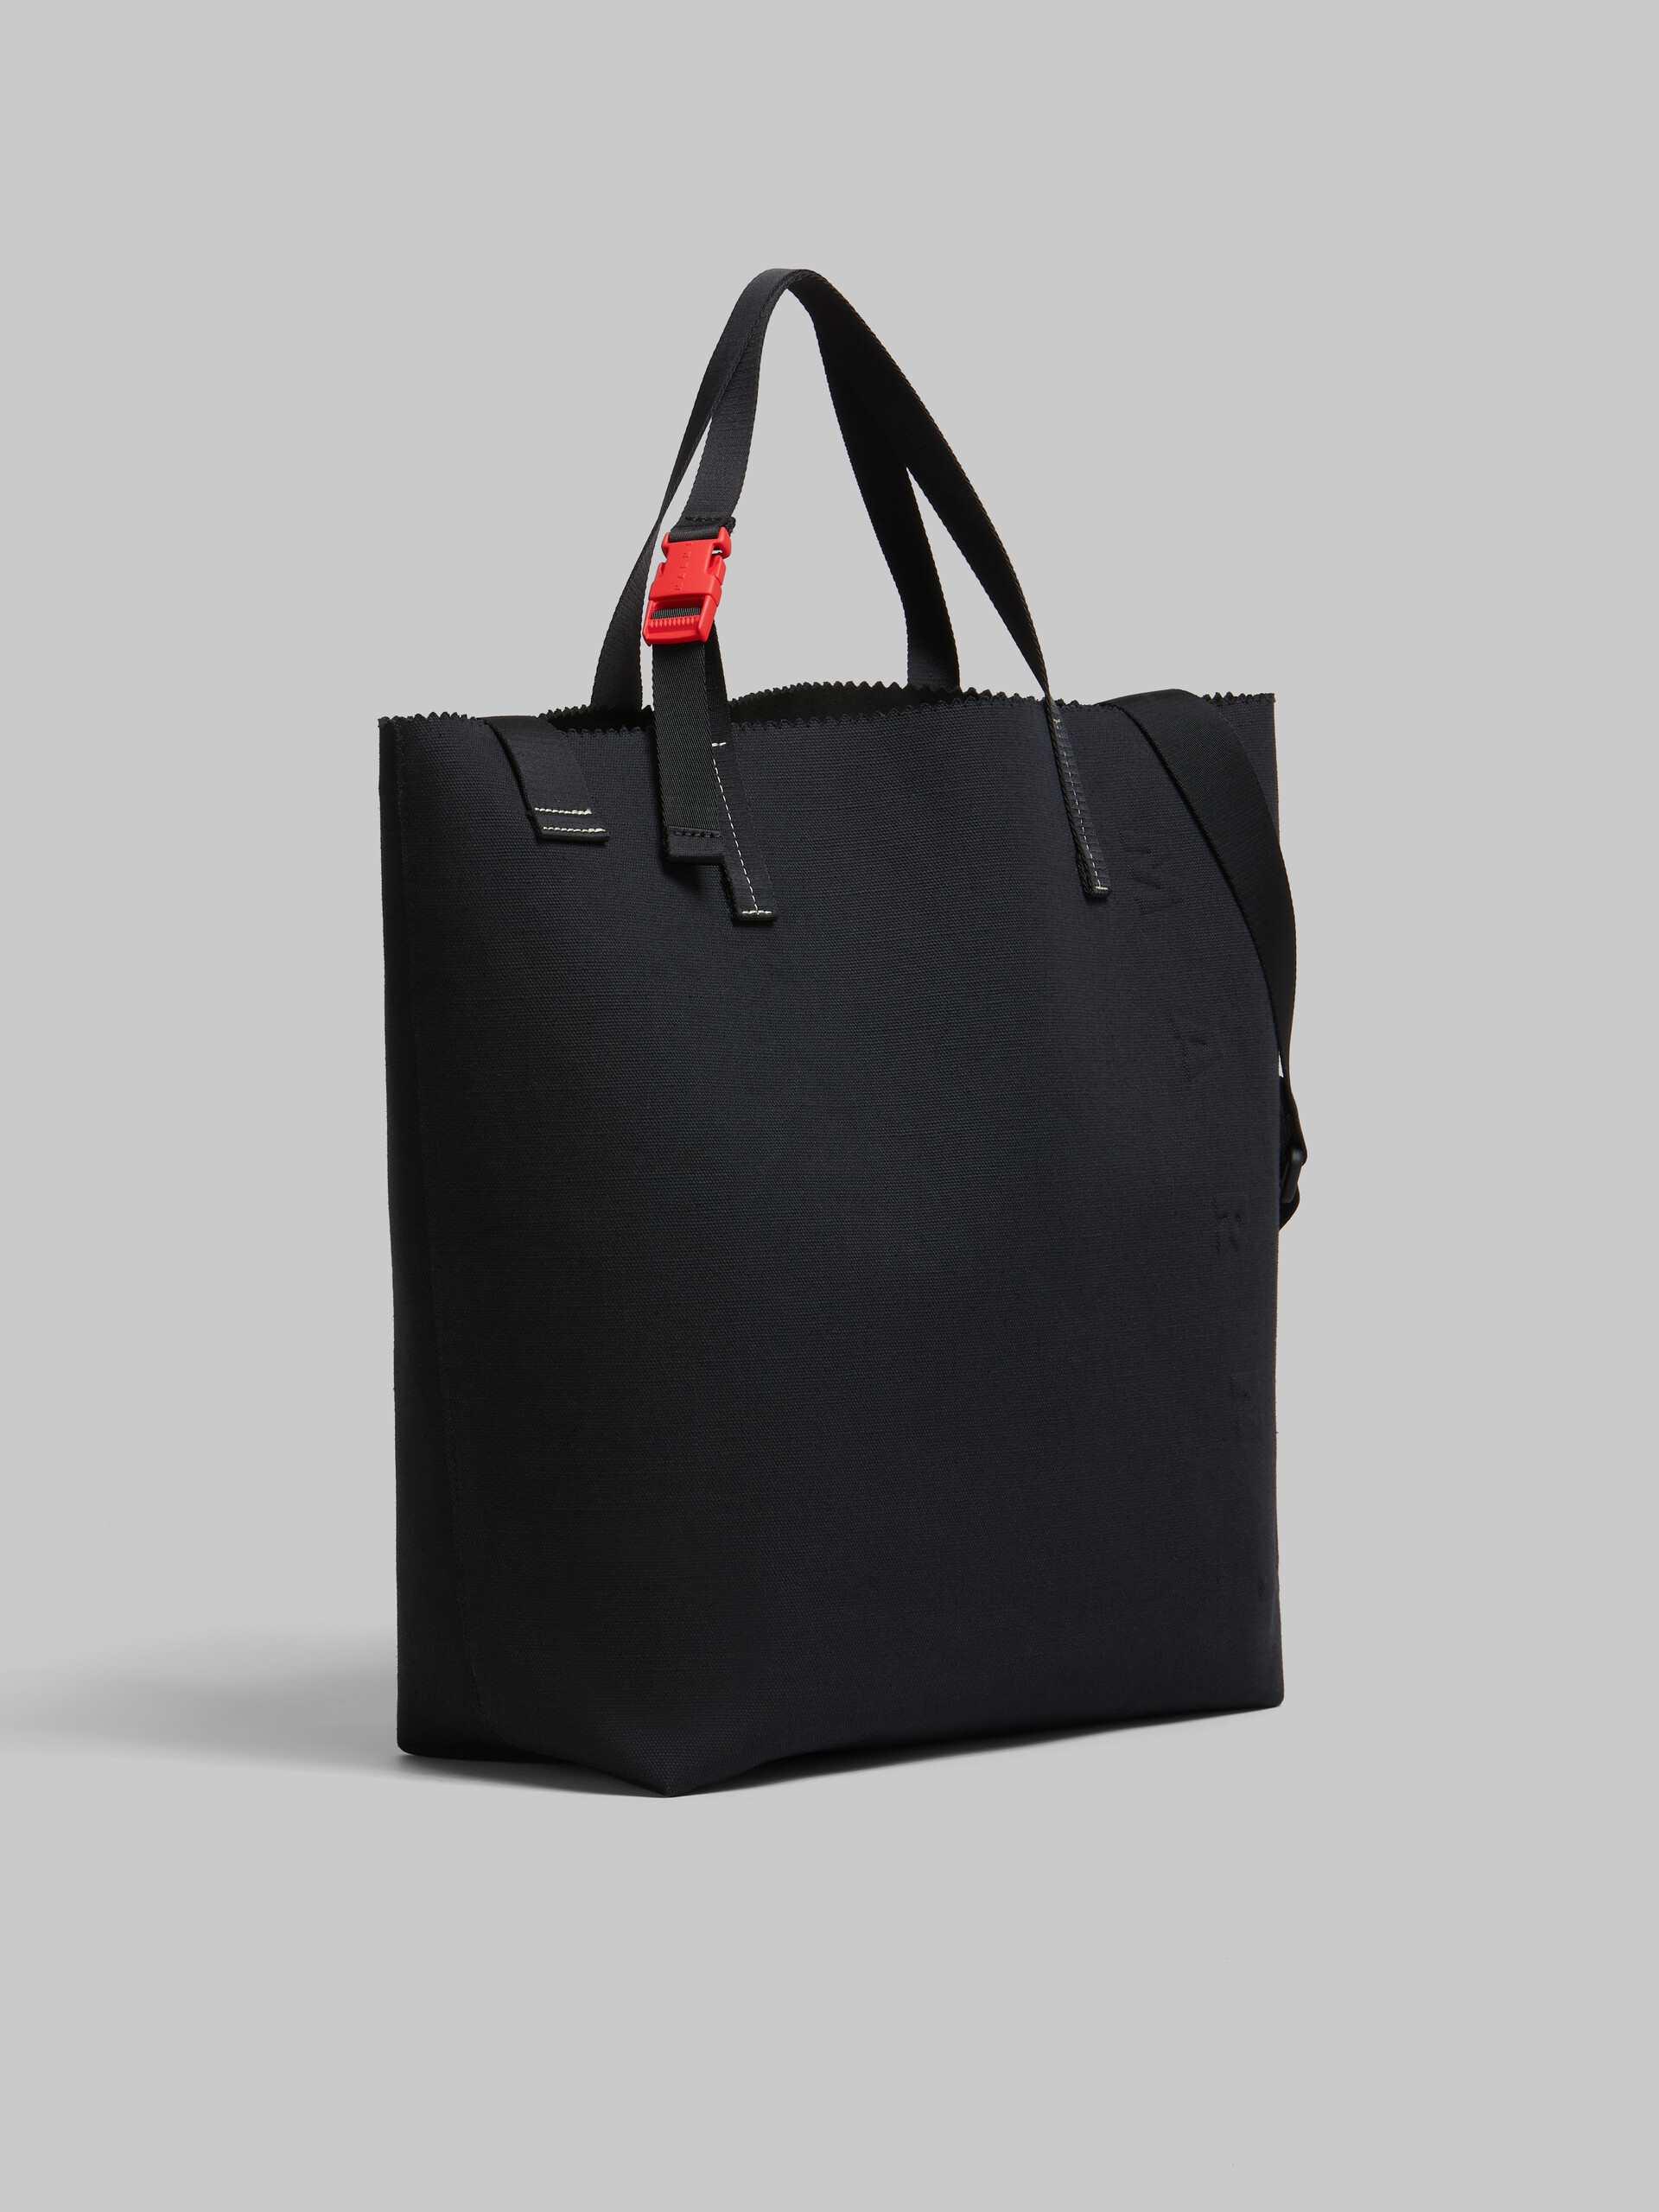 Bolso shopper Tribeca de lona negra con logotipo Marni en relieve - Bolsos shopper - Image 6